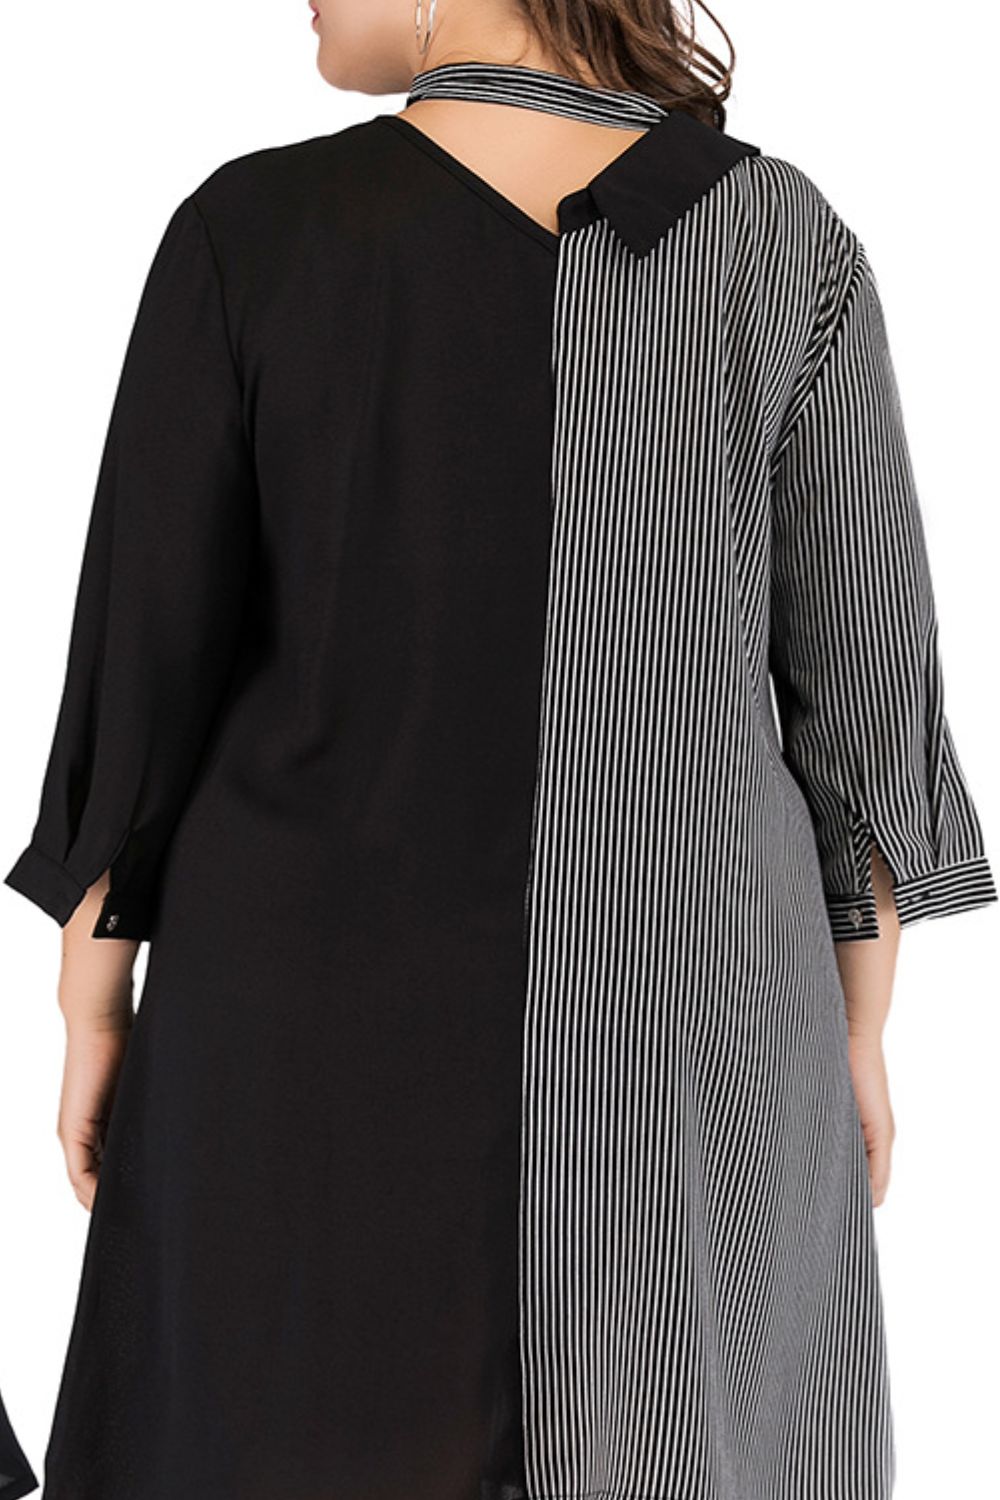 Black Plus Size Striped Color Block Tie-Neck Dress Clothes